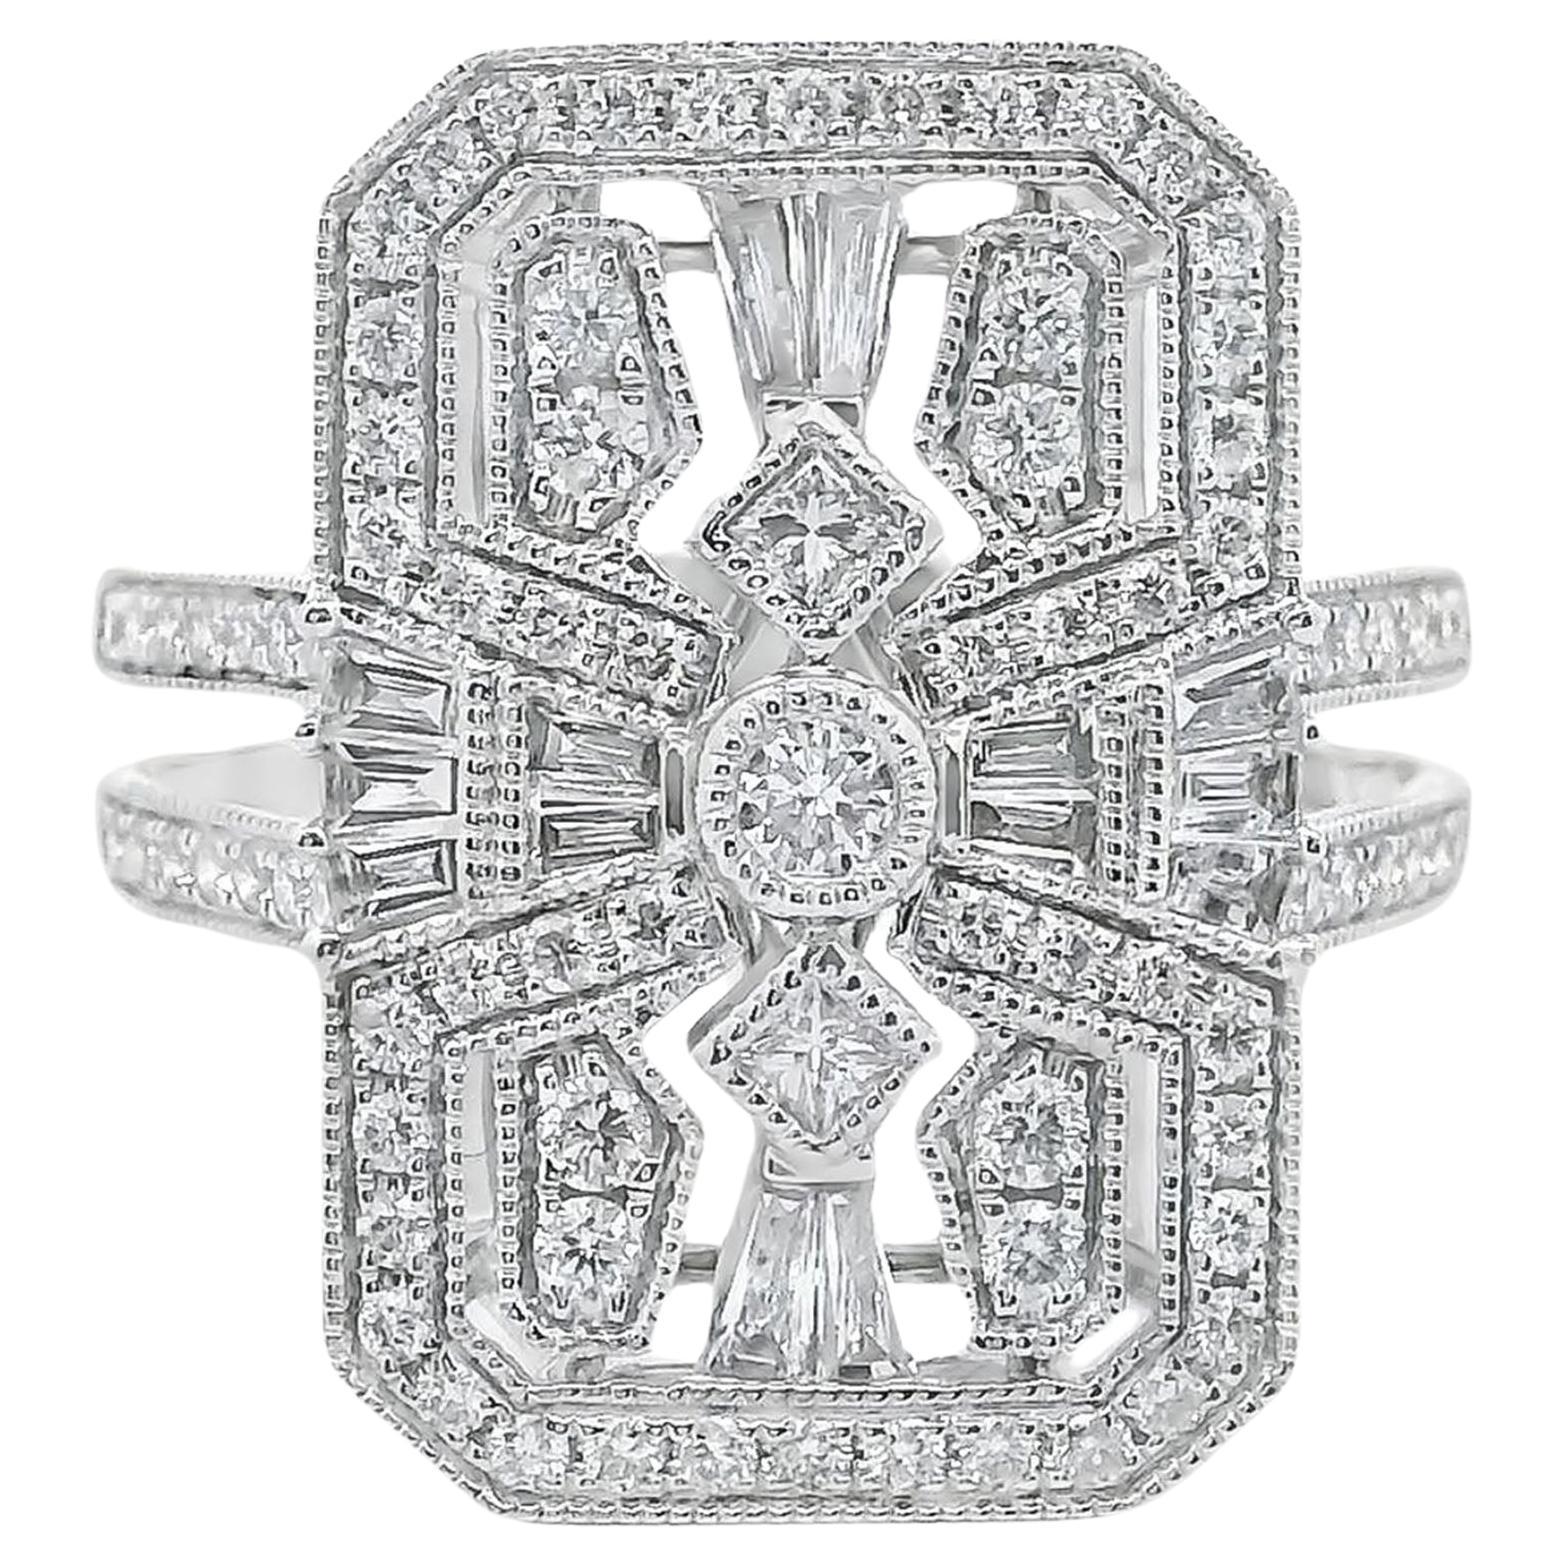 18K White Gold Art Deco Inspired Diamond Ring